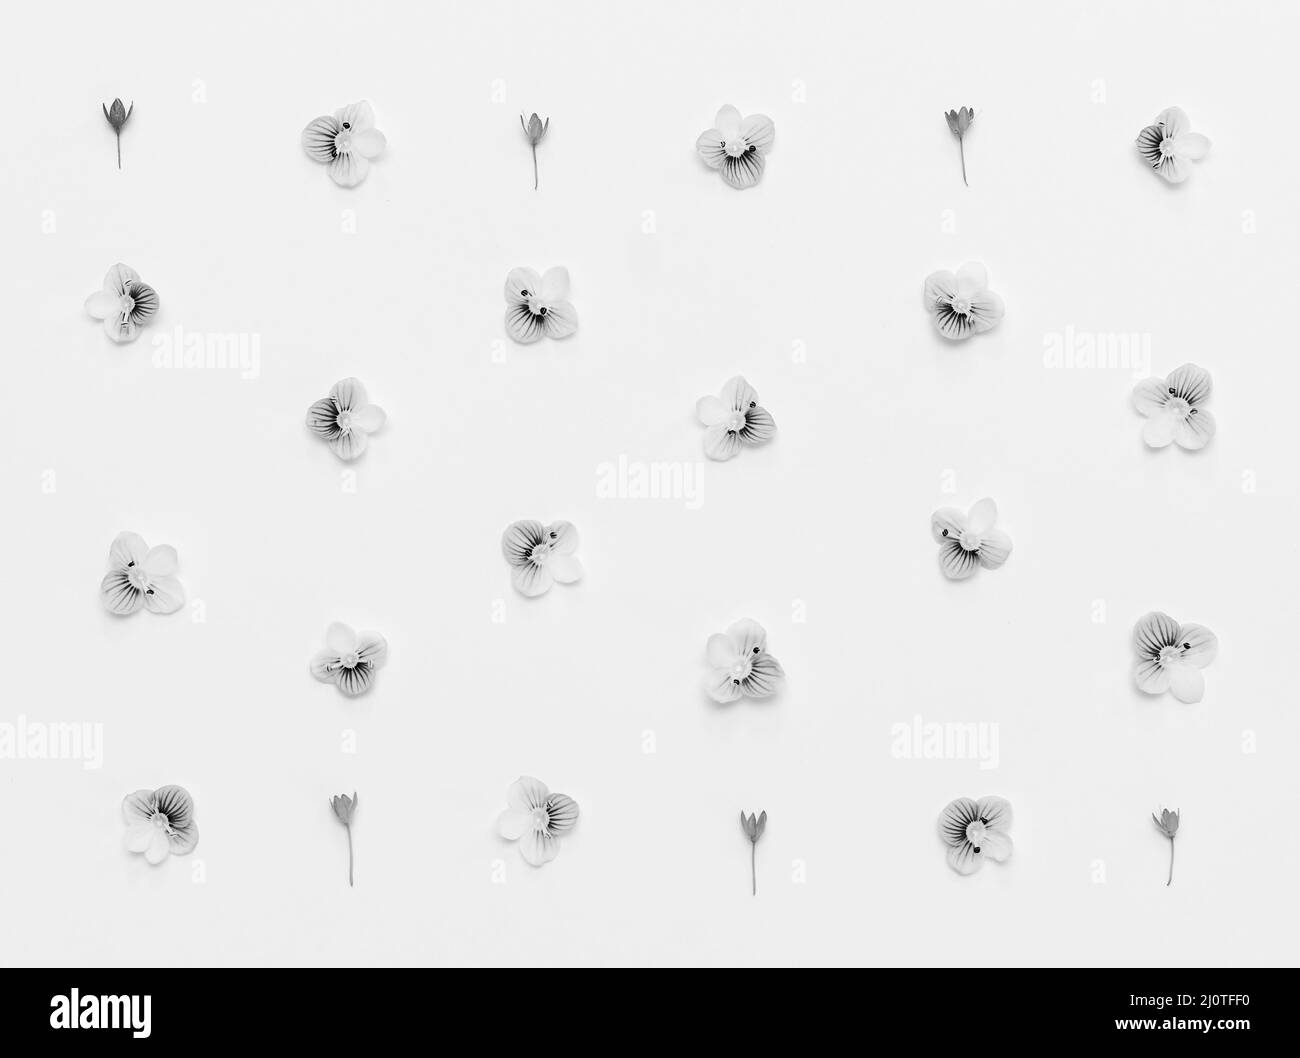 Motif floral sur fond blanc, photo en noir et blanc. Flat lay, vue de dessus Banque D'Images